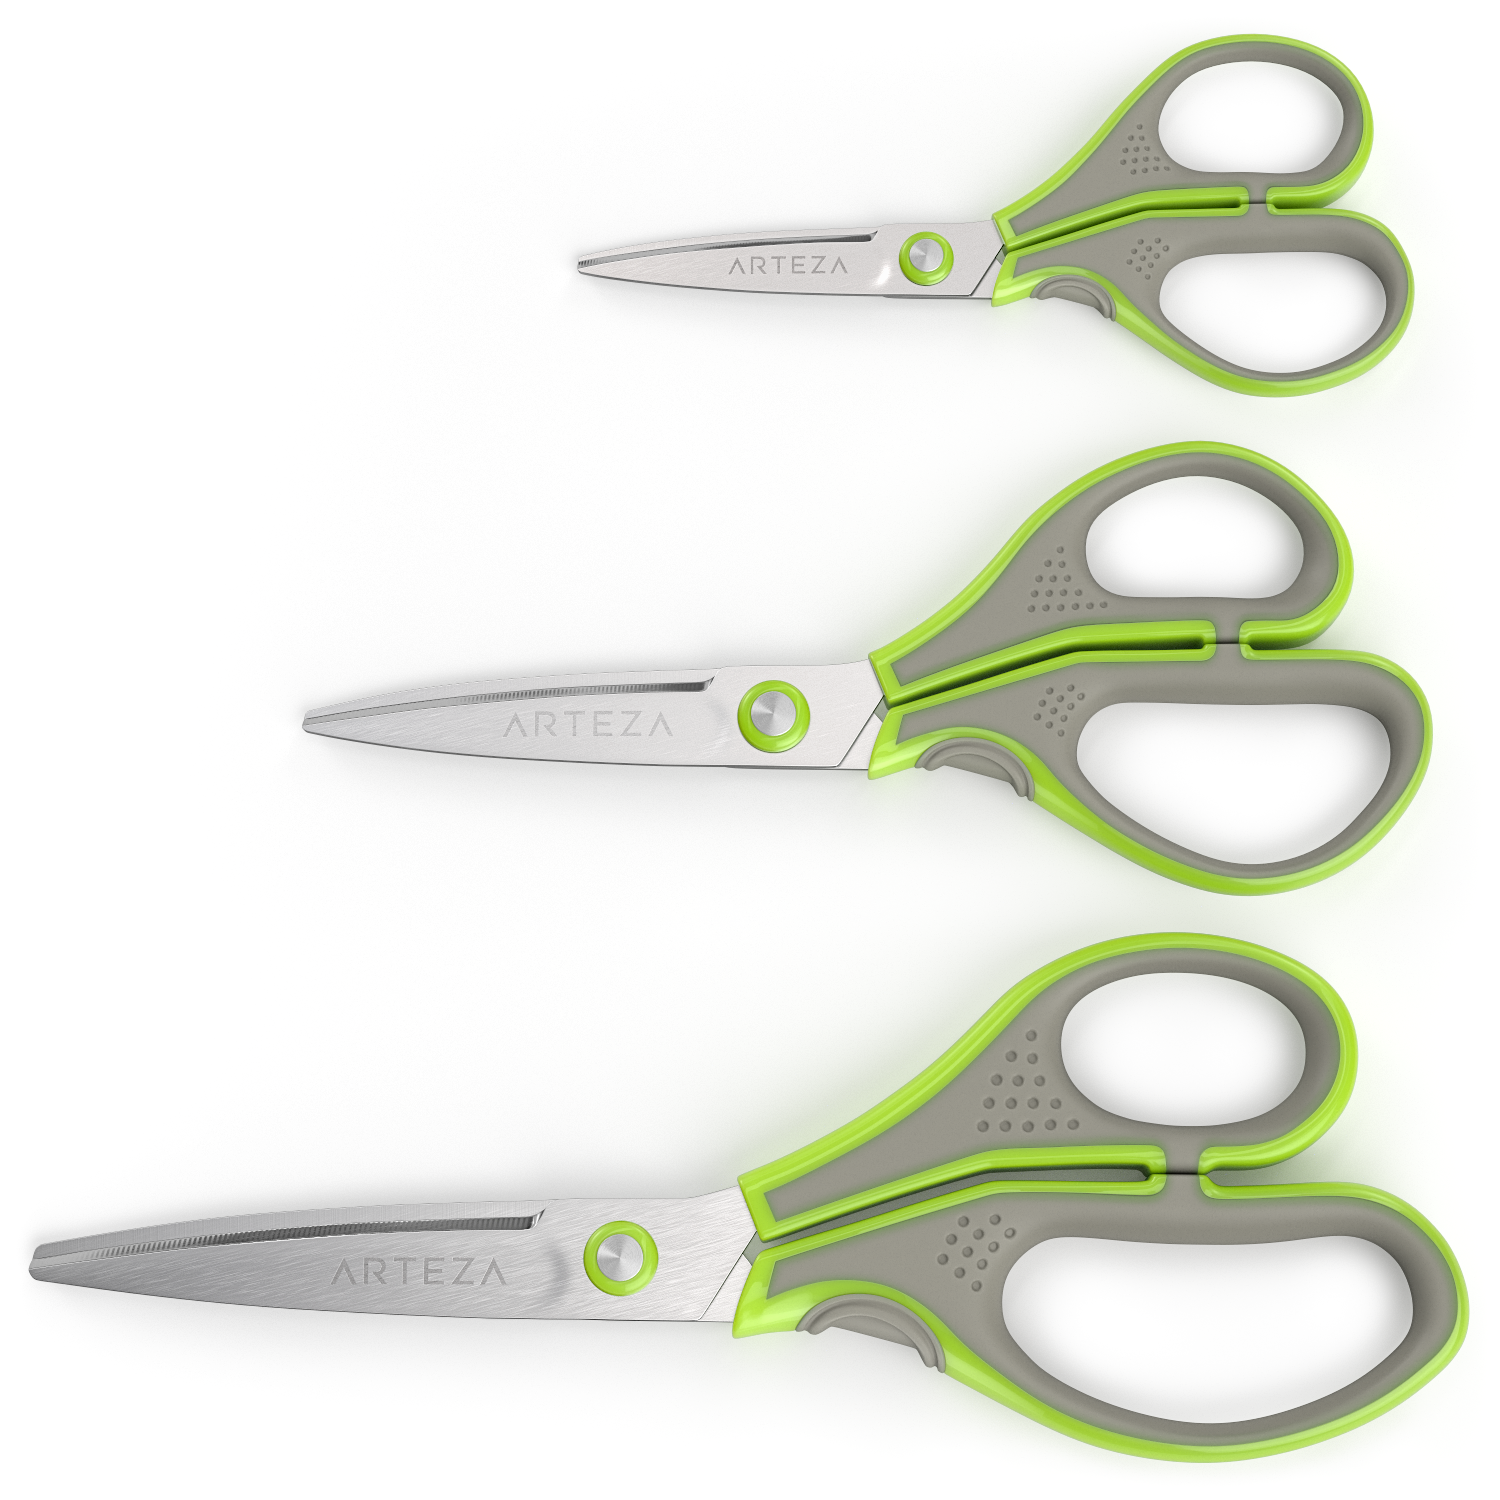 Scissors Kit Premium Comfort